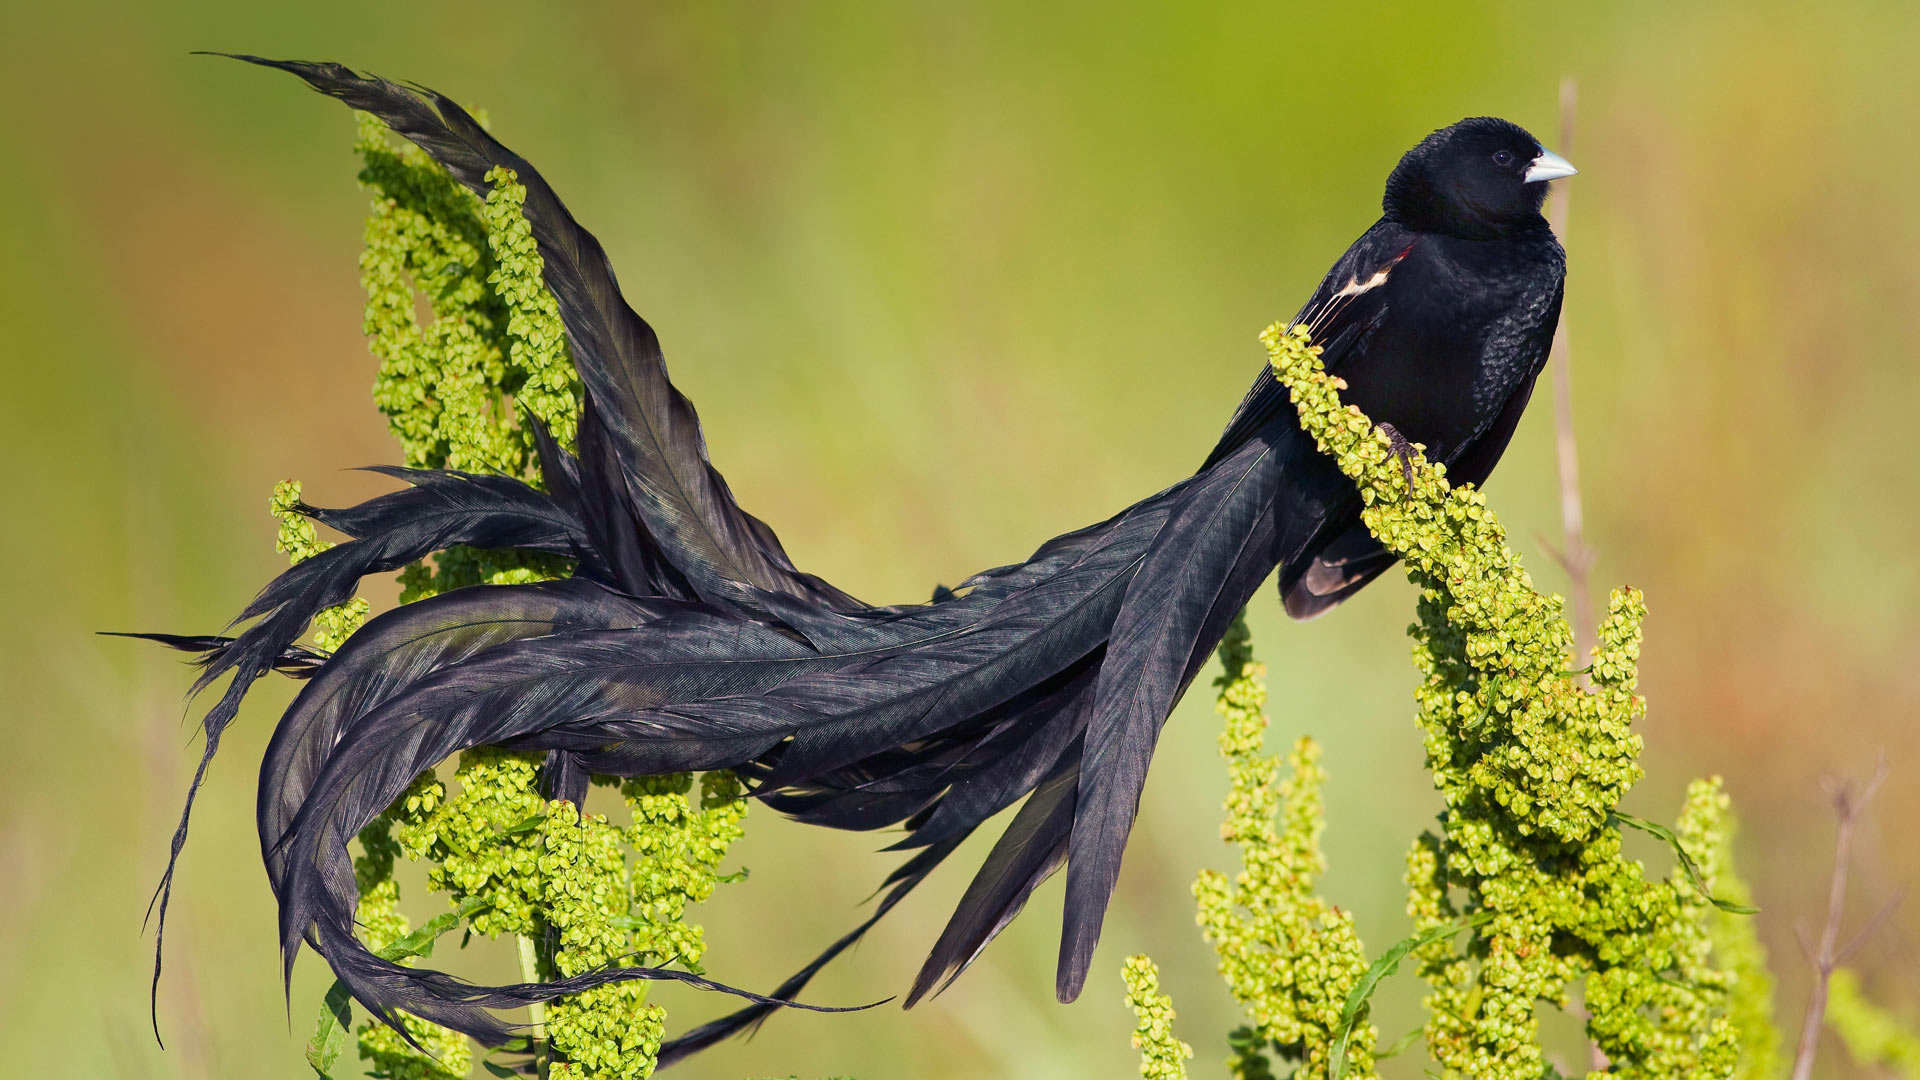 عکس پروفایل پرنده مشکی بسیار زیبا با پرهای بلند قشنگ